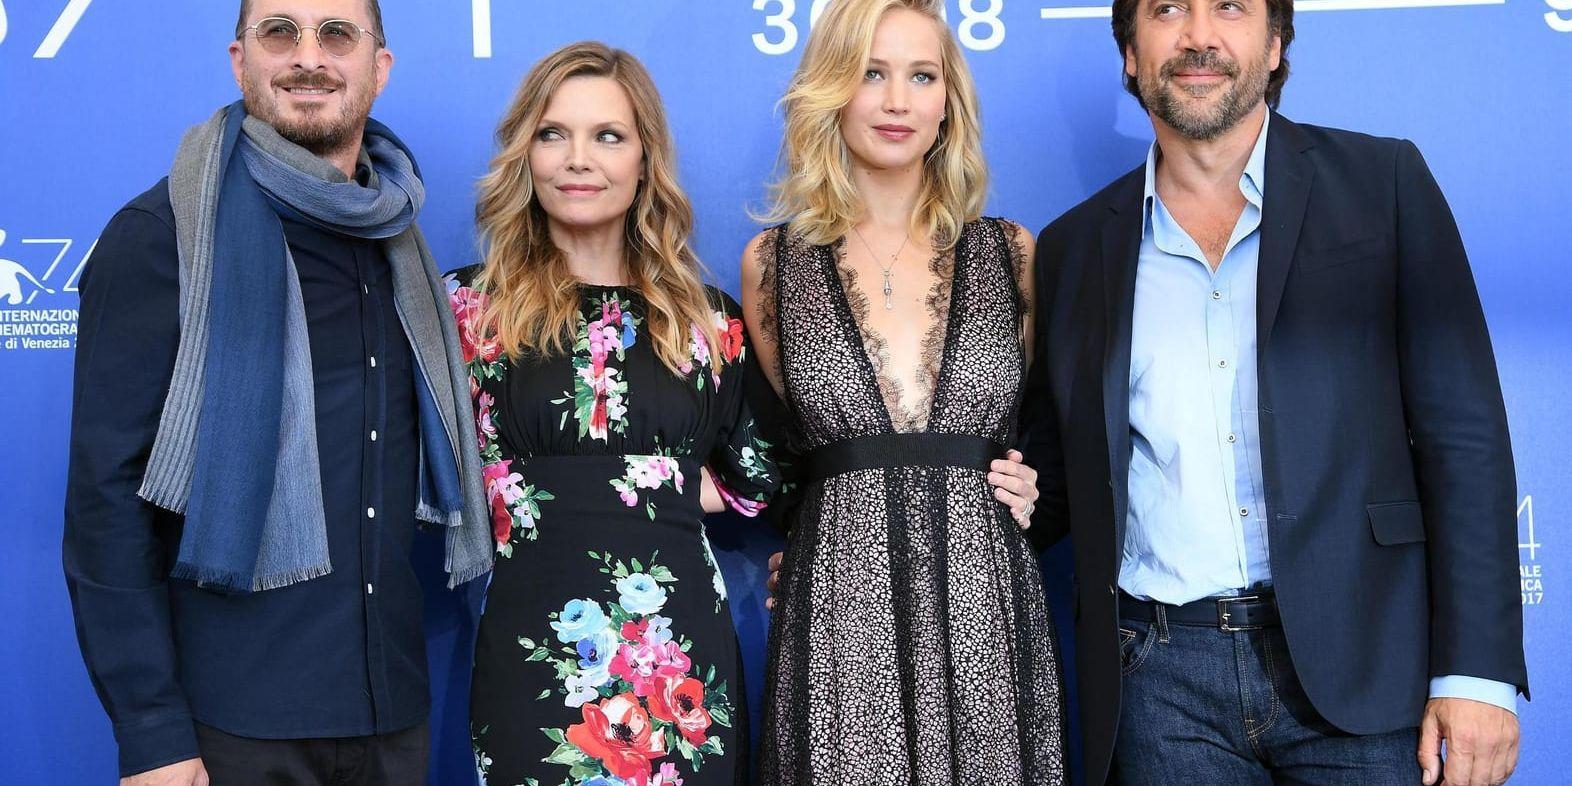 Regissören Darren Aronofsky och skådespelarna Michelle Pfeiffer, Jennifer Lawrence och Javier Bardem poserar inför pressvisningen av filmen "Mother" i Venedig.